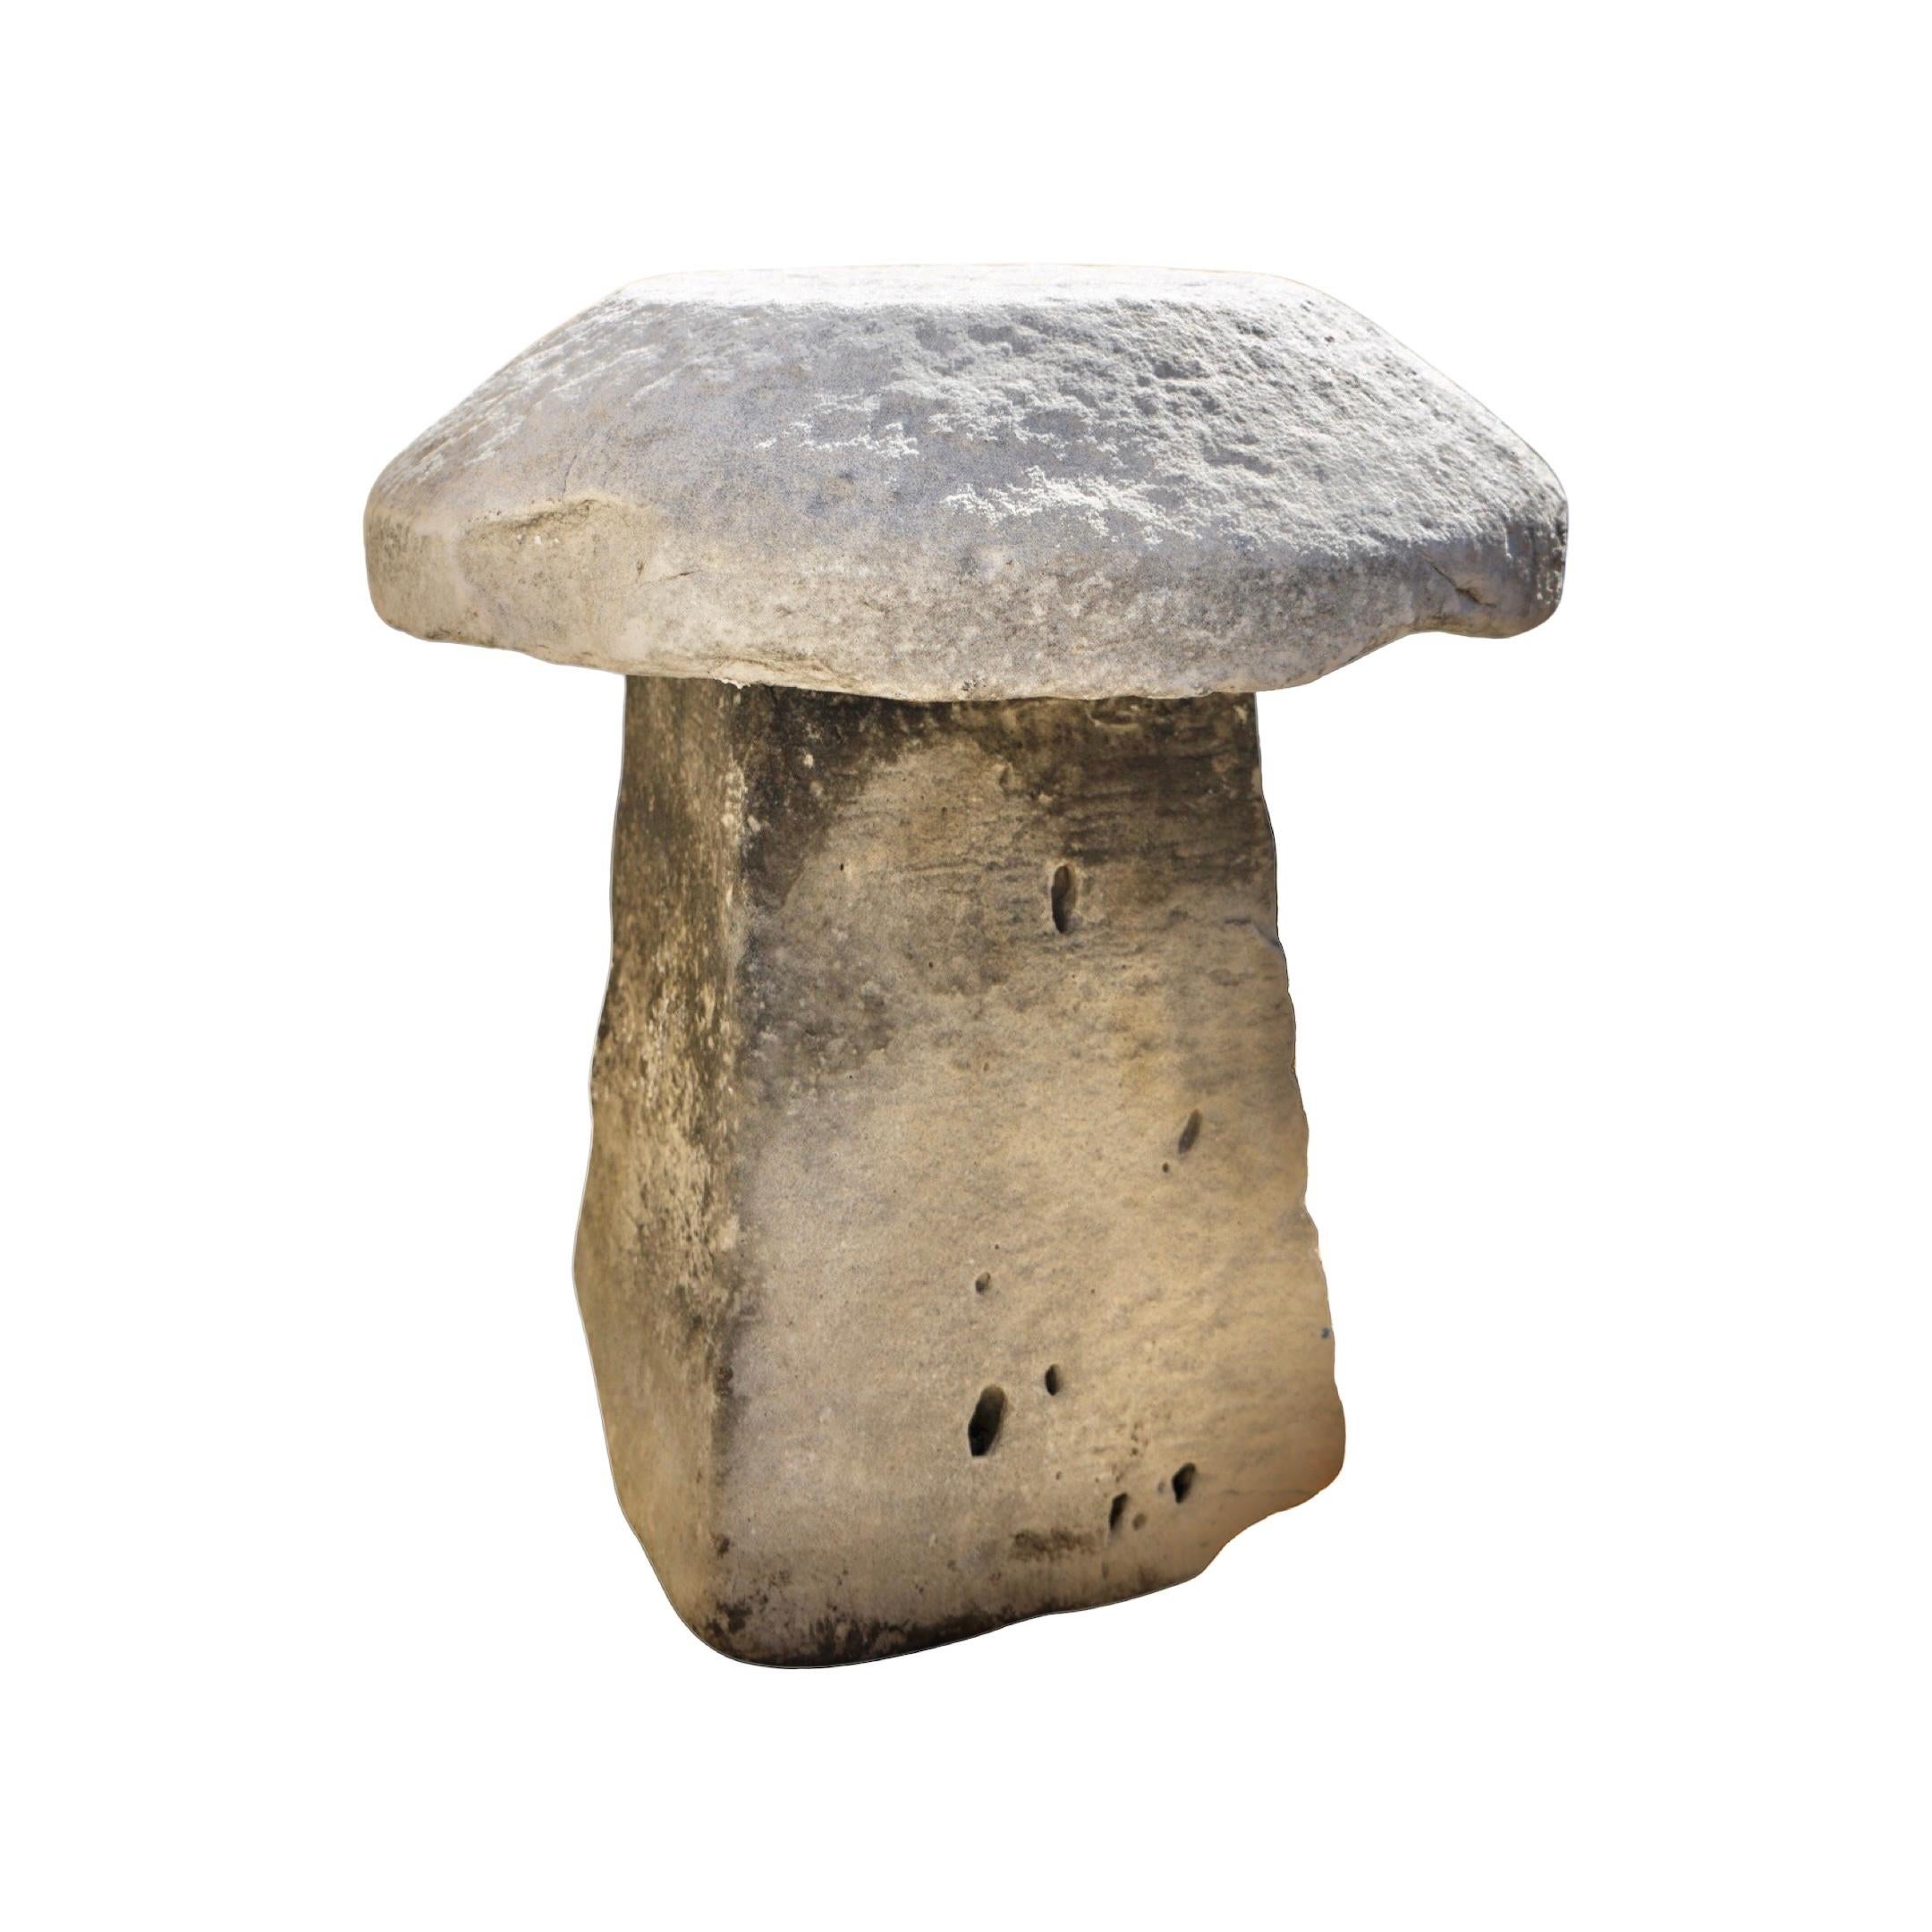 Fabriqué en pierre calcaire de haute qualité, ce pilier en pierre à califourchon est une pièce étonnante de l'histoire de la France du XVIIe siècle. Apportez une touche d'élégance et de sophistication à votre intérieur grâce à un riche héritage